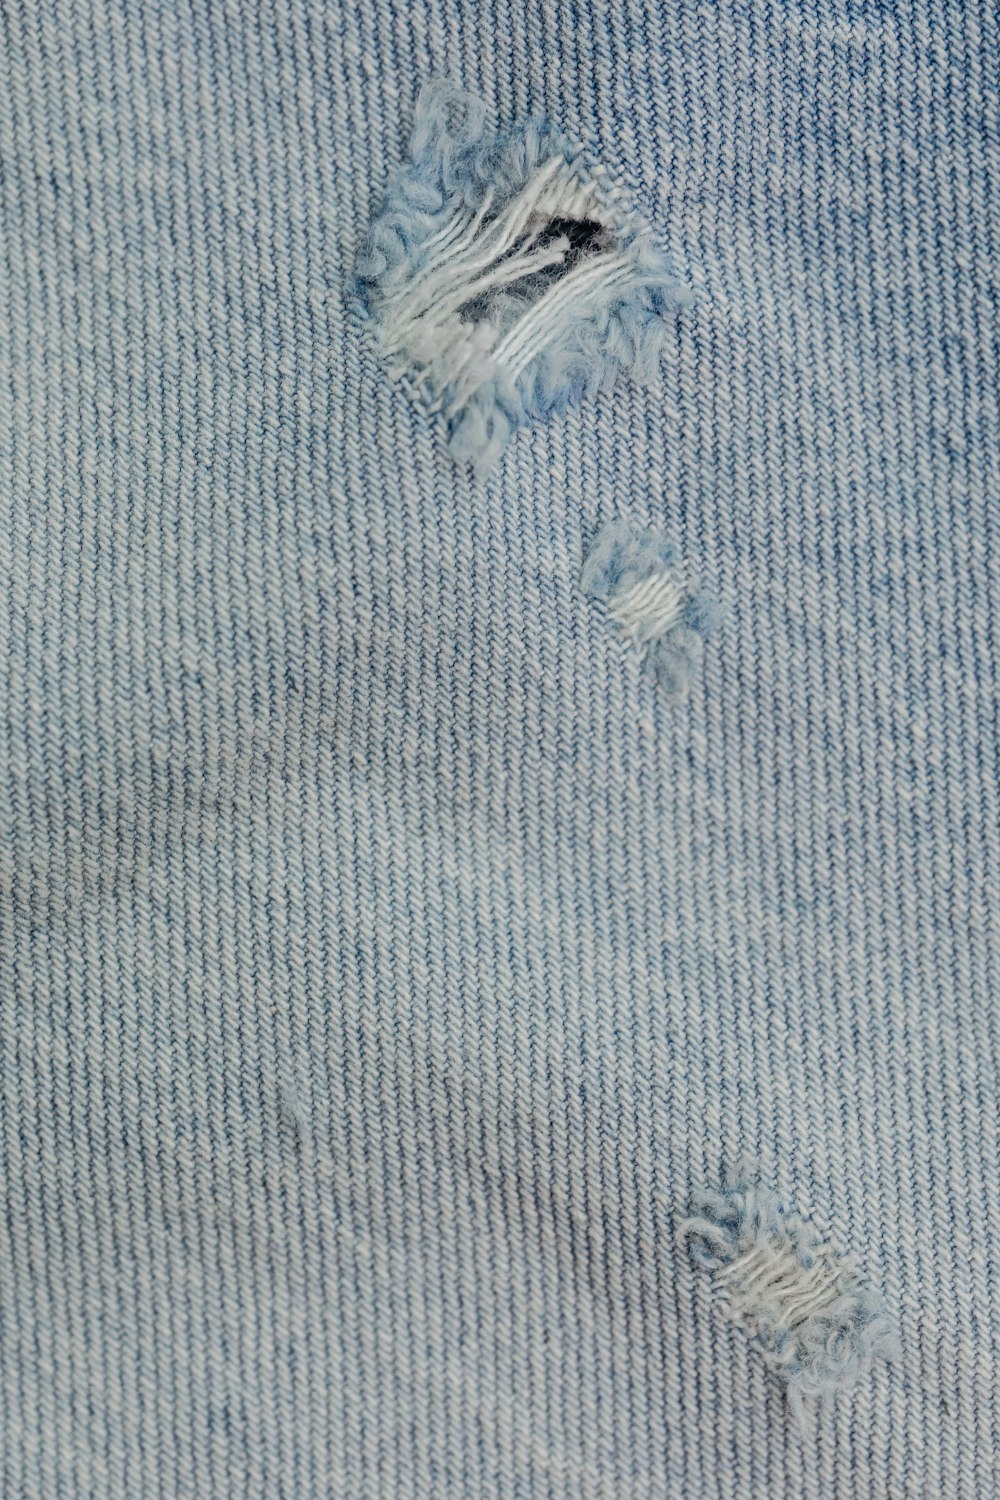 um close up de uma peça de roupa com buracos nela